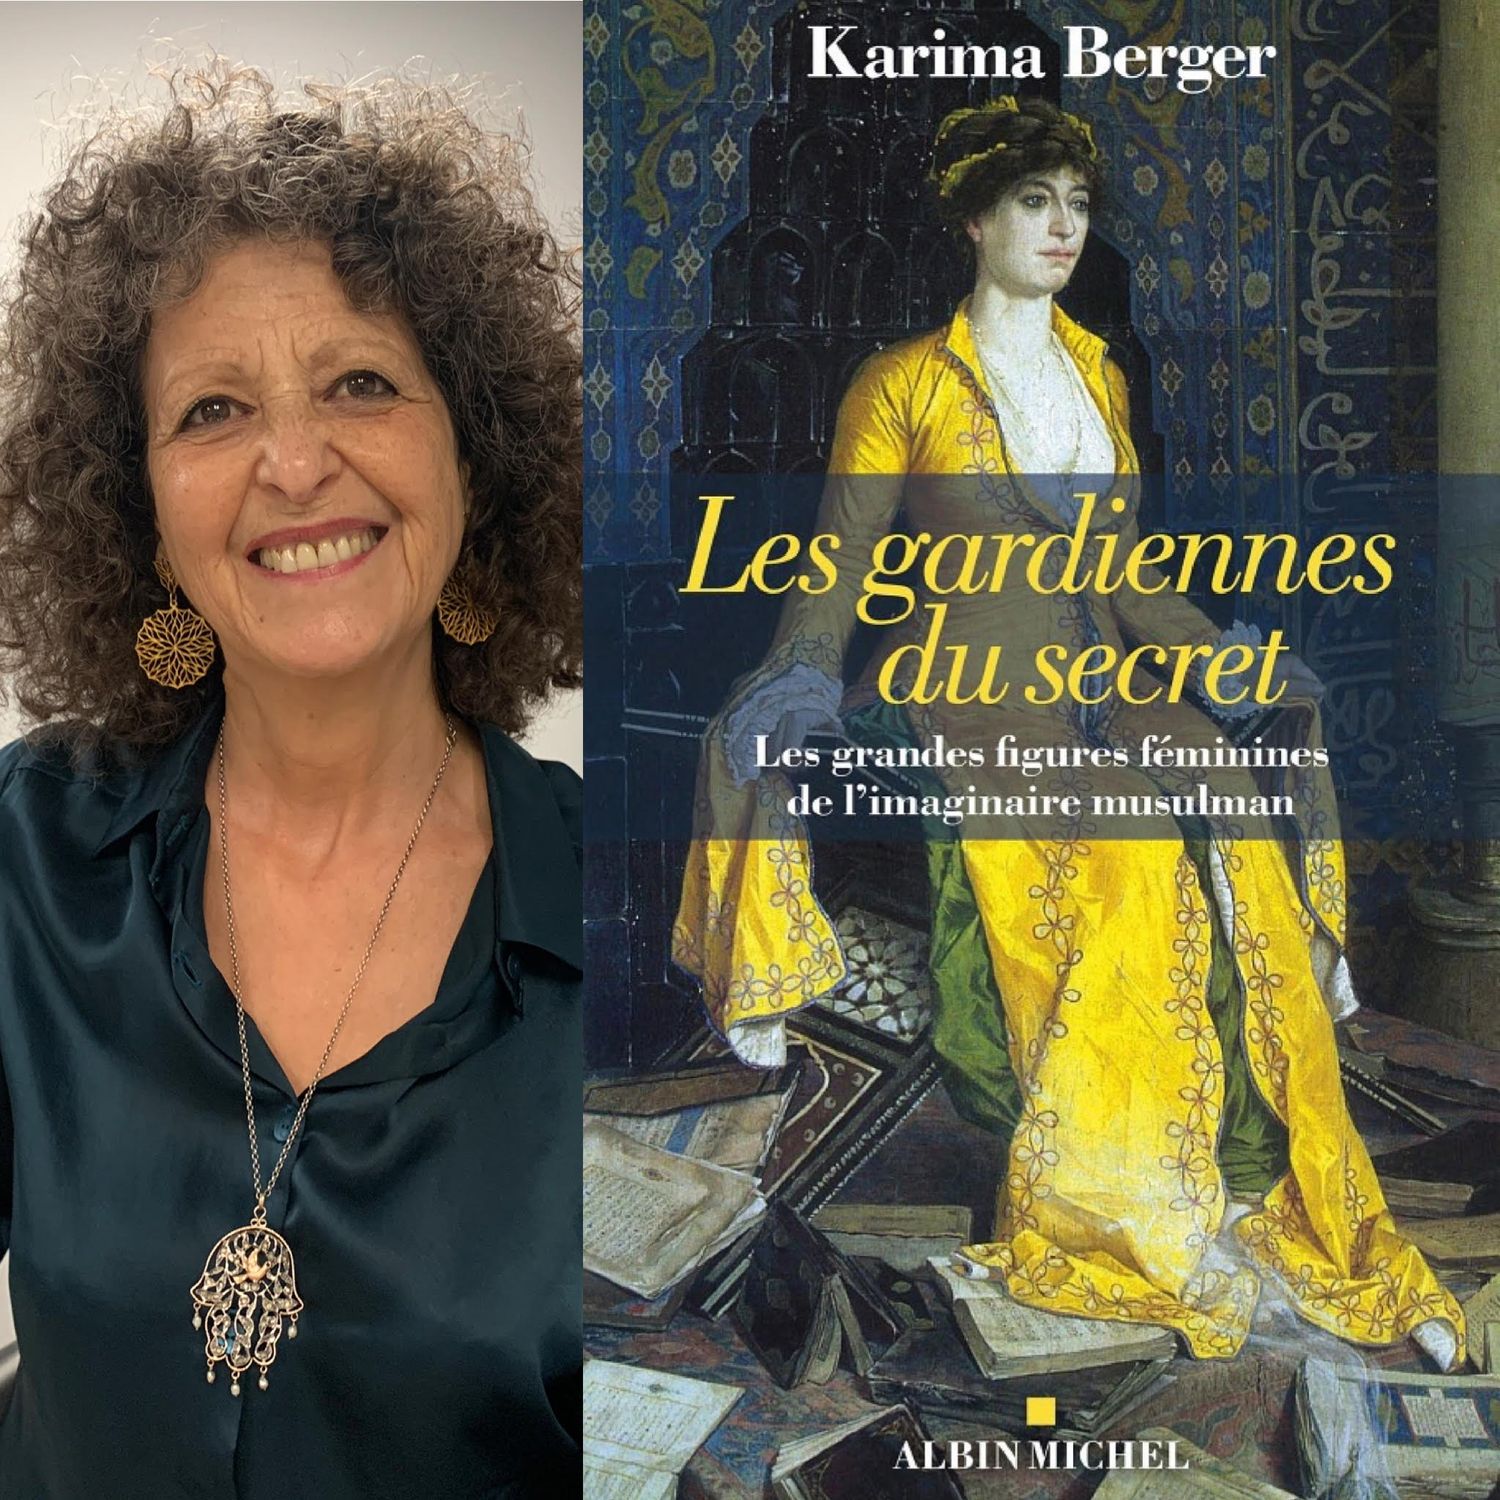  Karima Berger, “Les gardiennes du secret, les grandes figures...